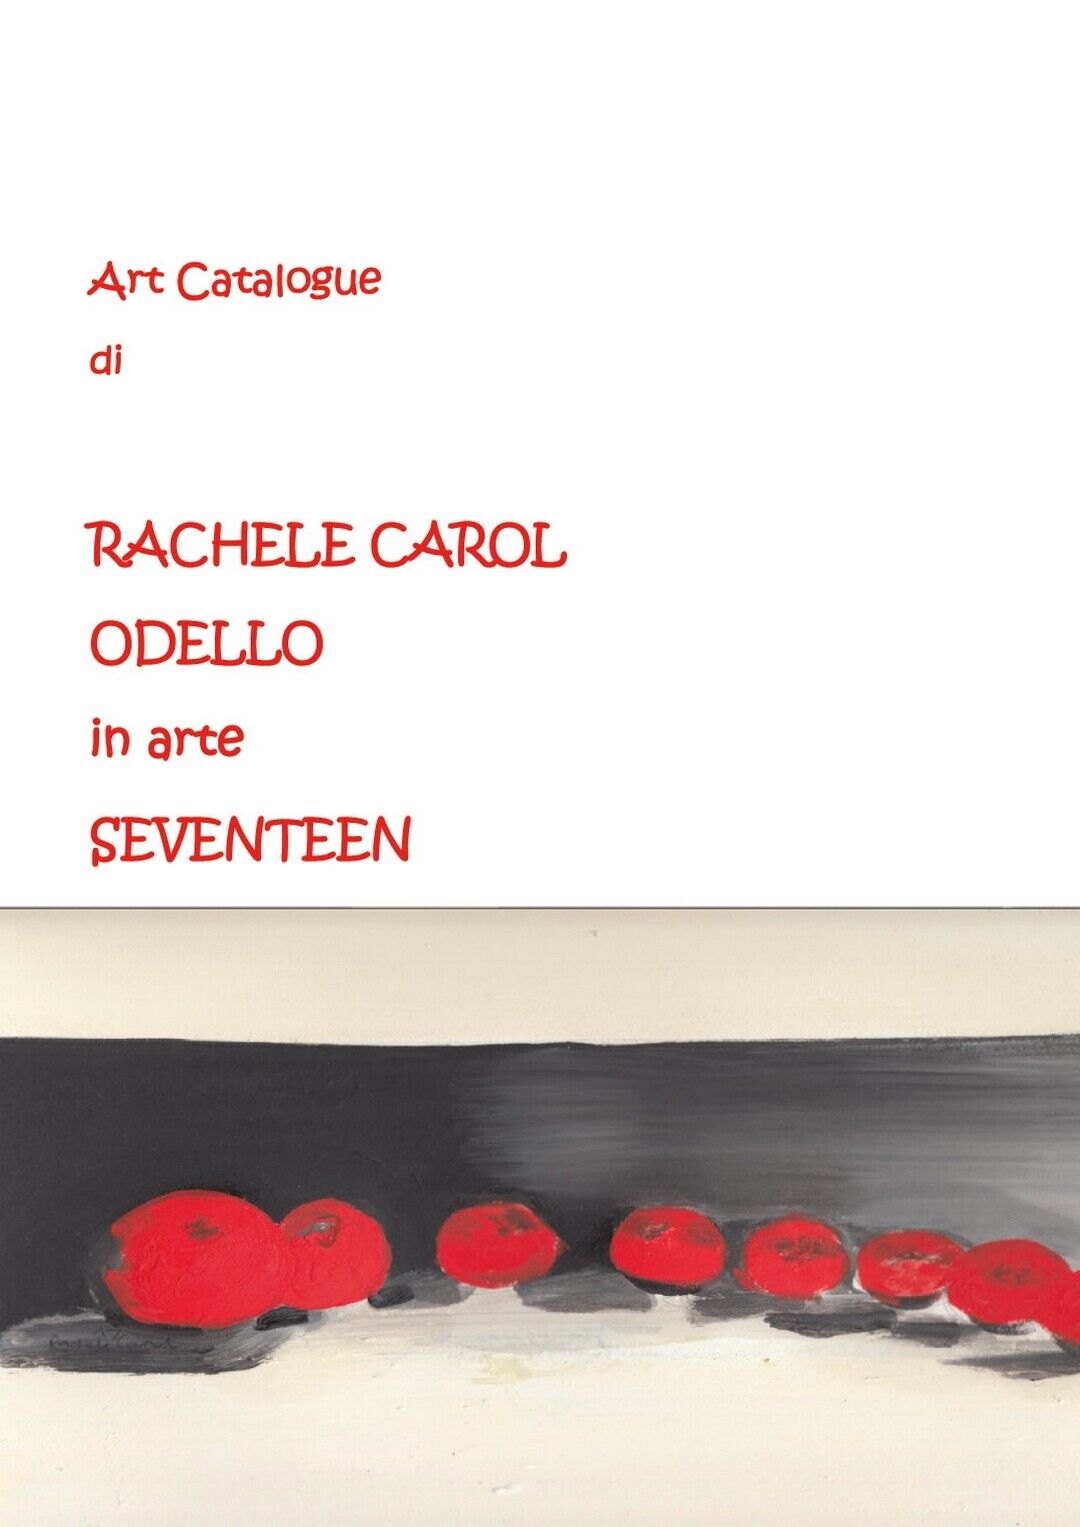 Art Catalogue di Rachele Carol Odello in arte Seventeen  di Rachele Carol Odello